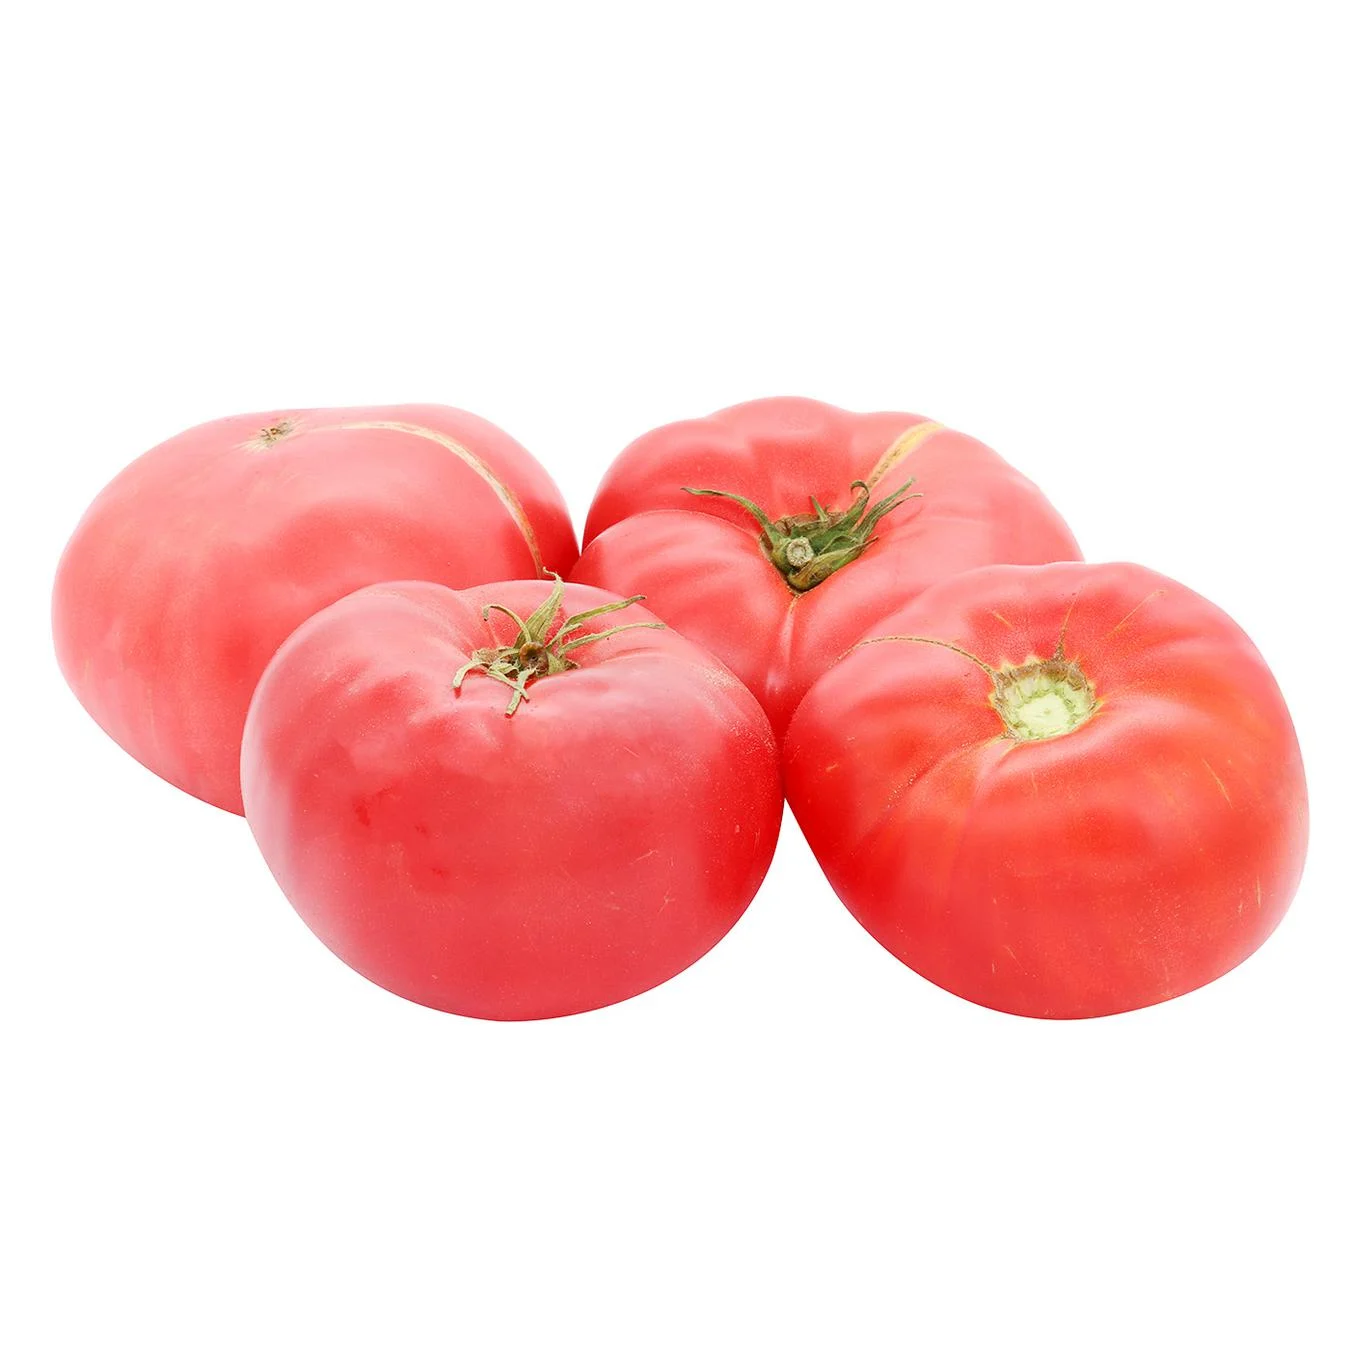 Timento tomato